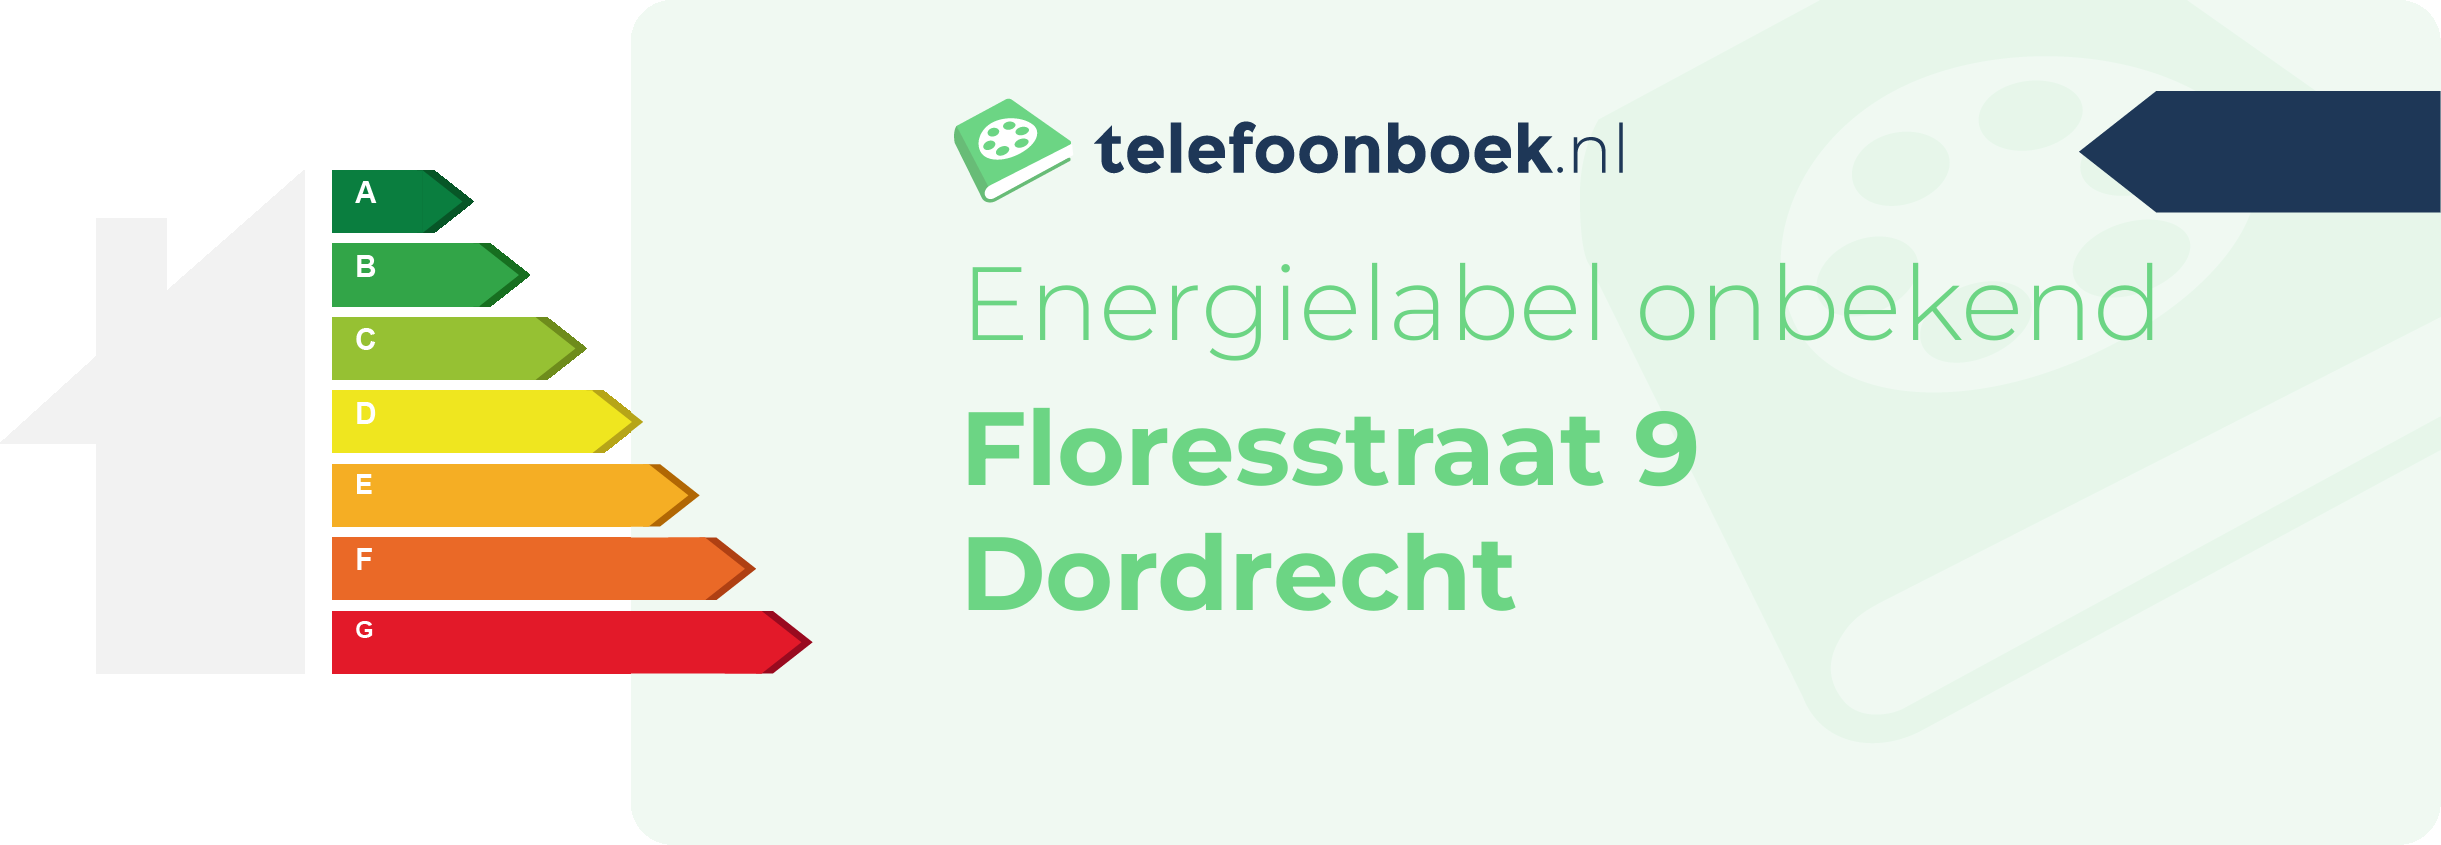 Energielabel Floresstraat 9 Dordrecht